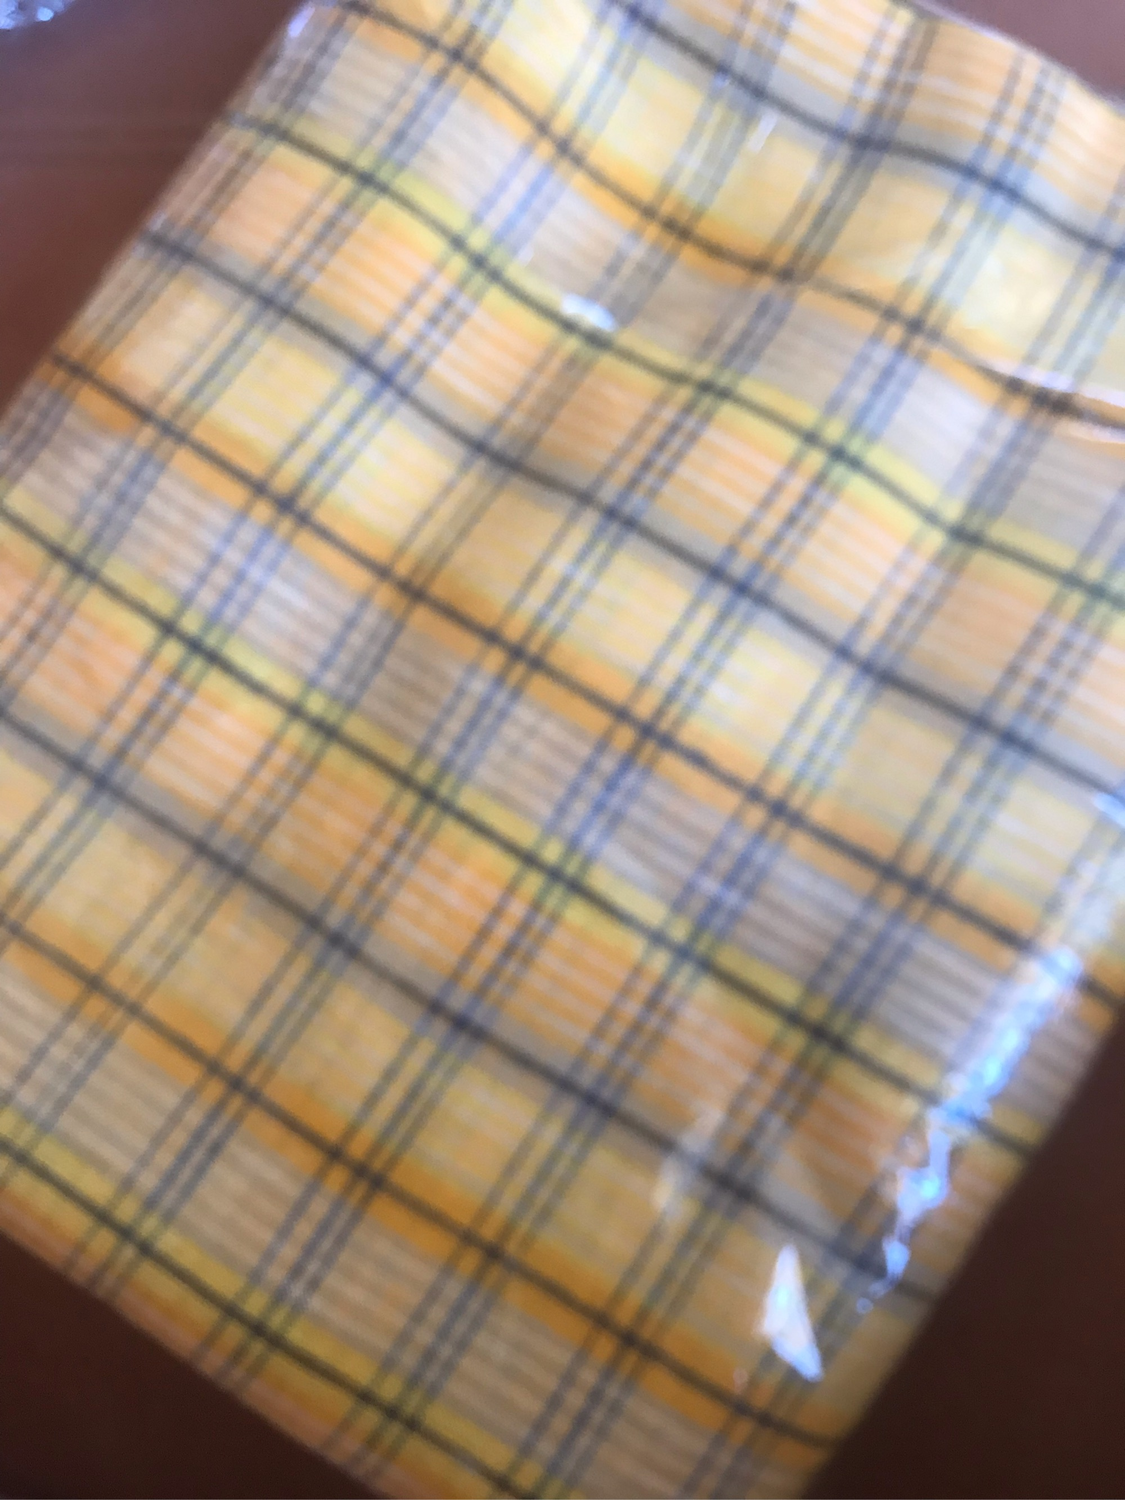 Фото №1 к отзыву покупателя лач о товаре Ткань для шитья Льняная " Оранжево-желтая клетка" и еще 2 товара